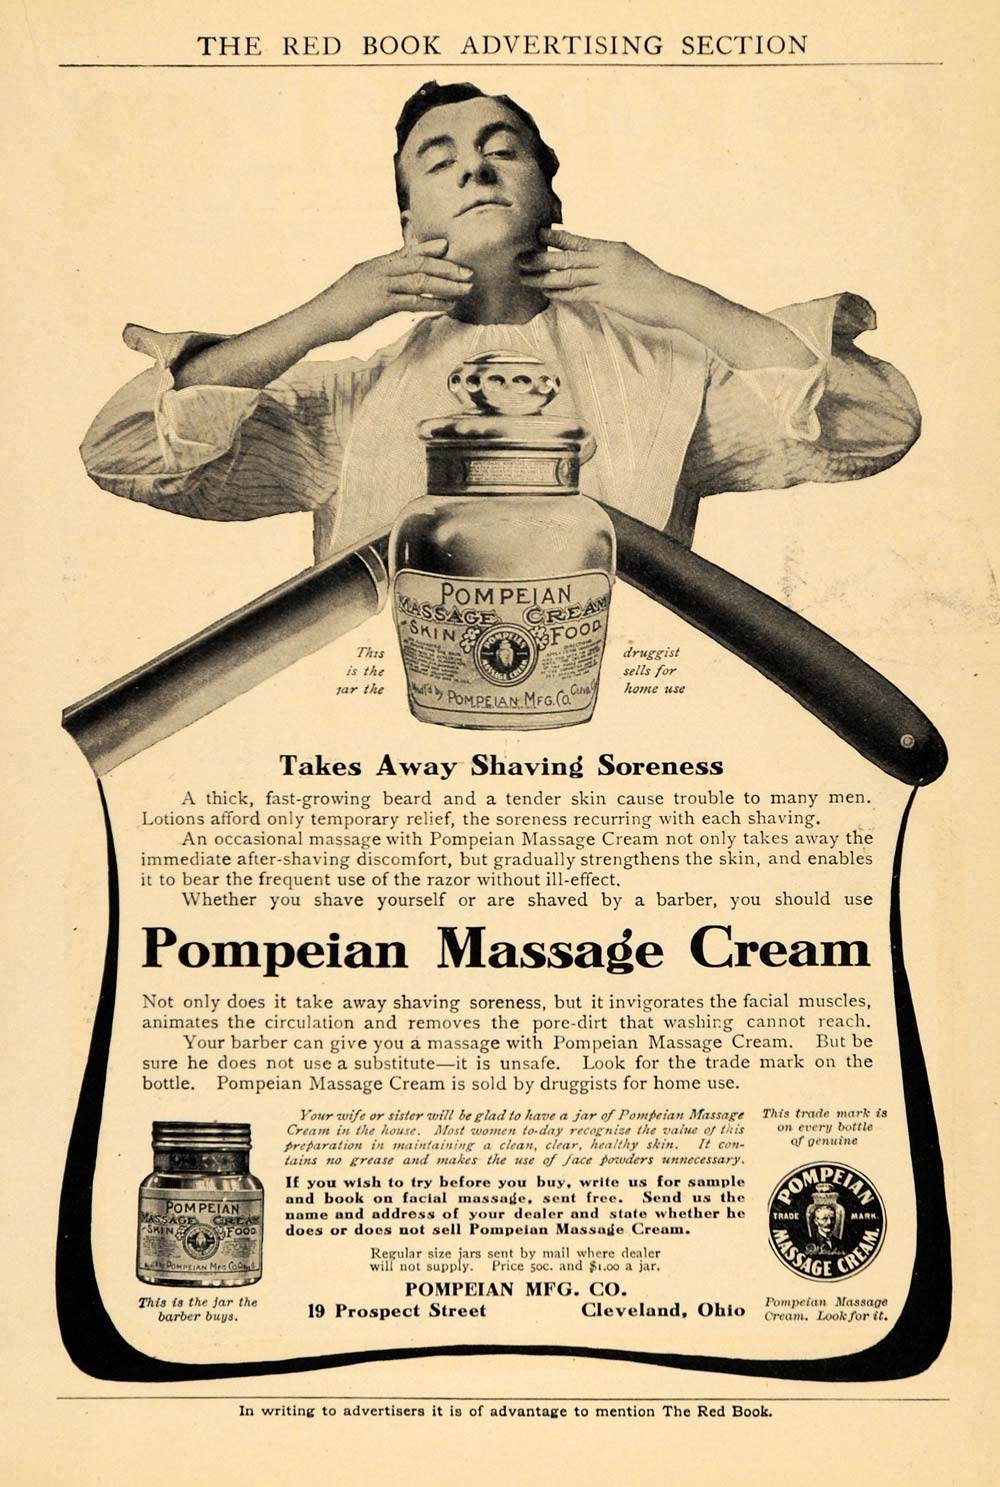 1905 Ad Pompeian Massage Cream Shaving Soreness Relief - ORIGINAL RB1